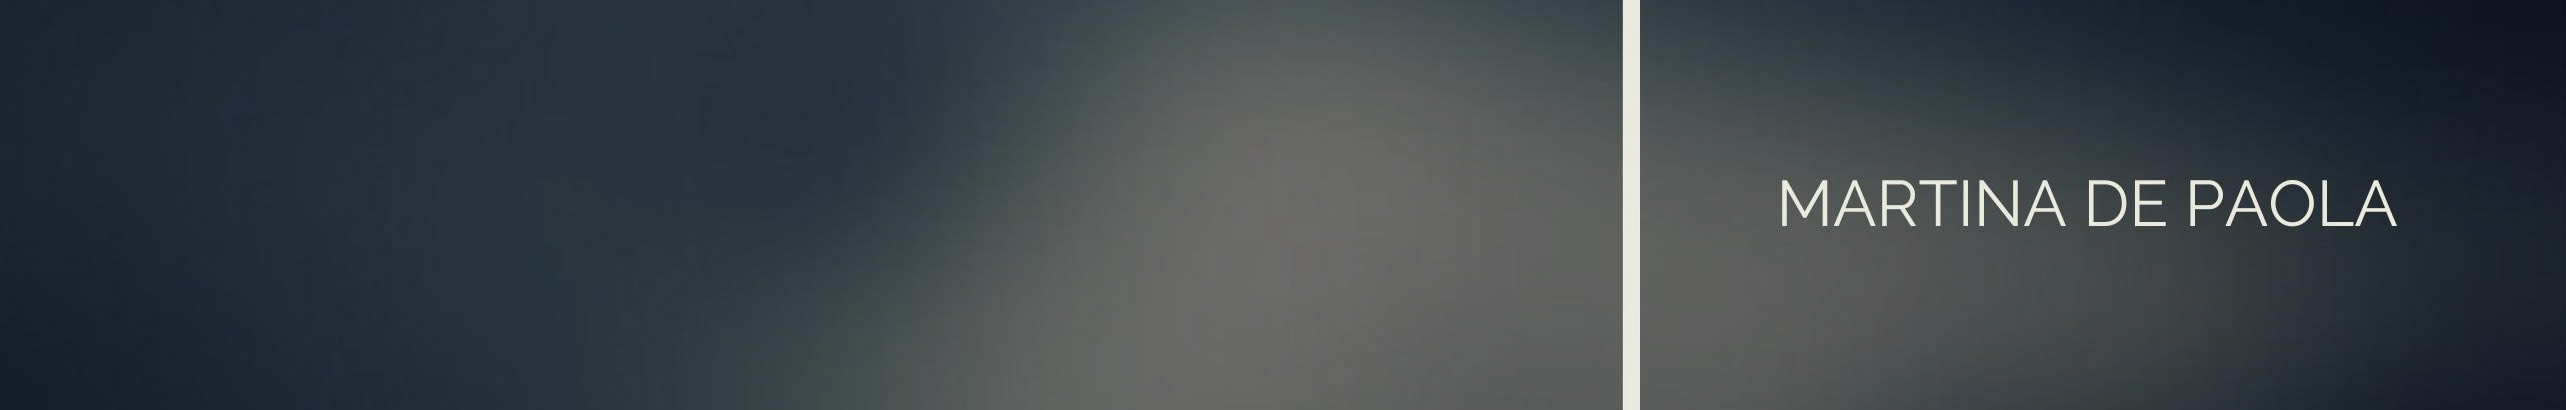 Martina De Paola's profile banner